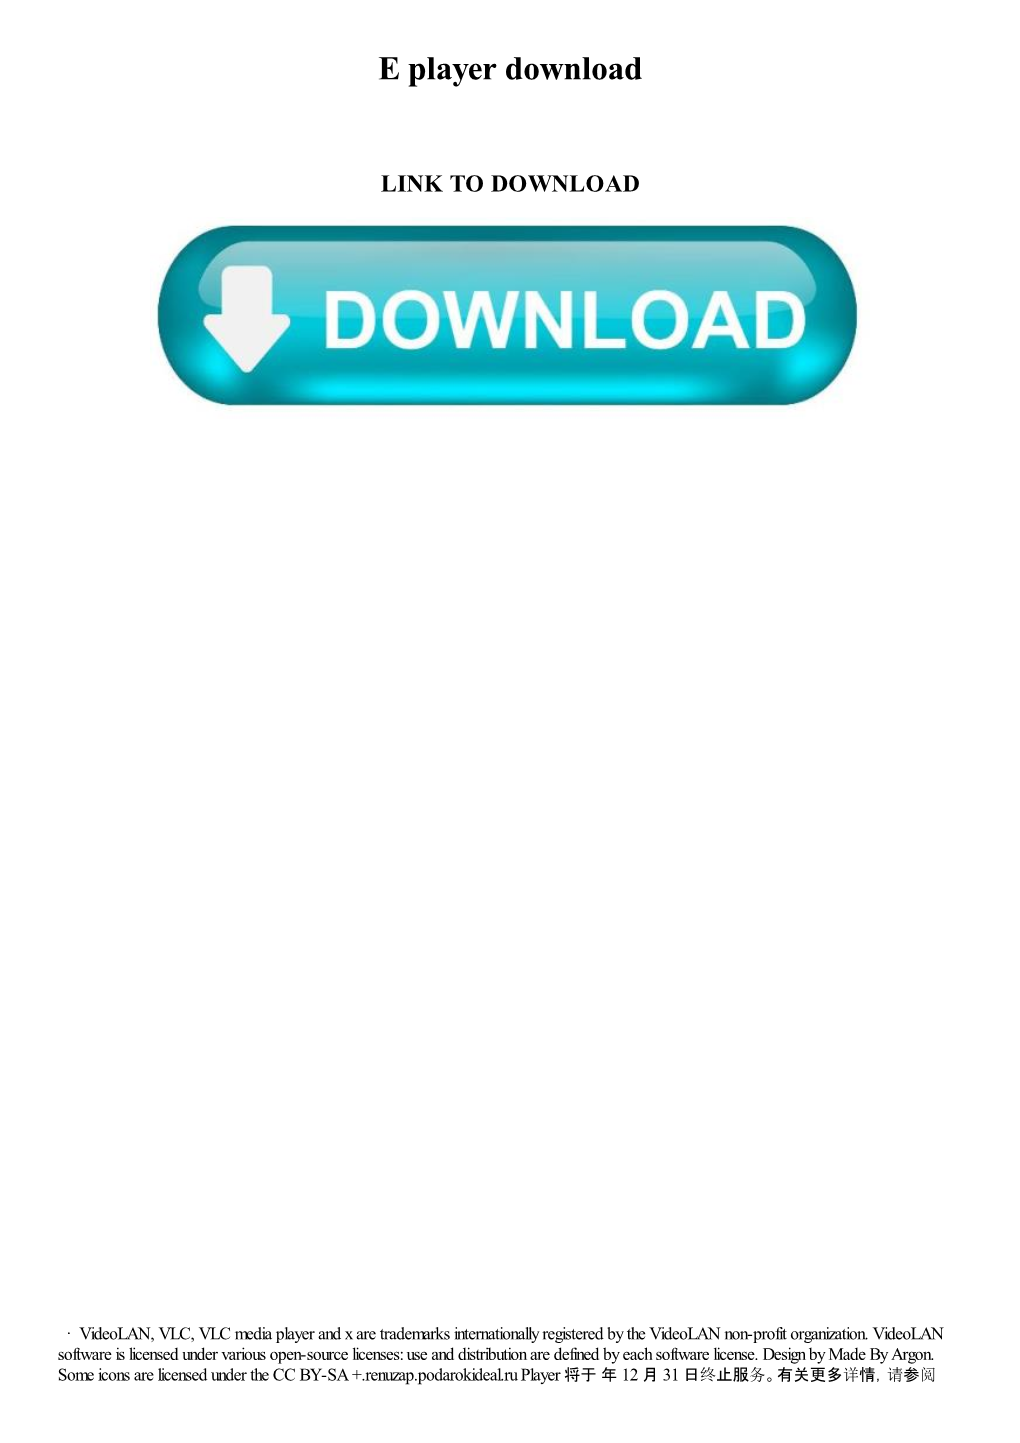 E Player Download